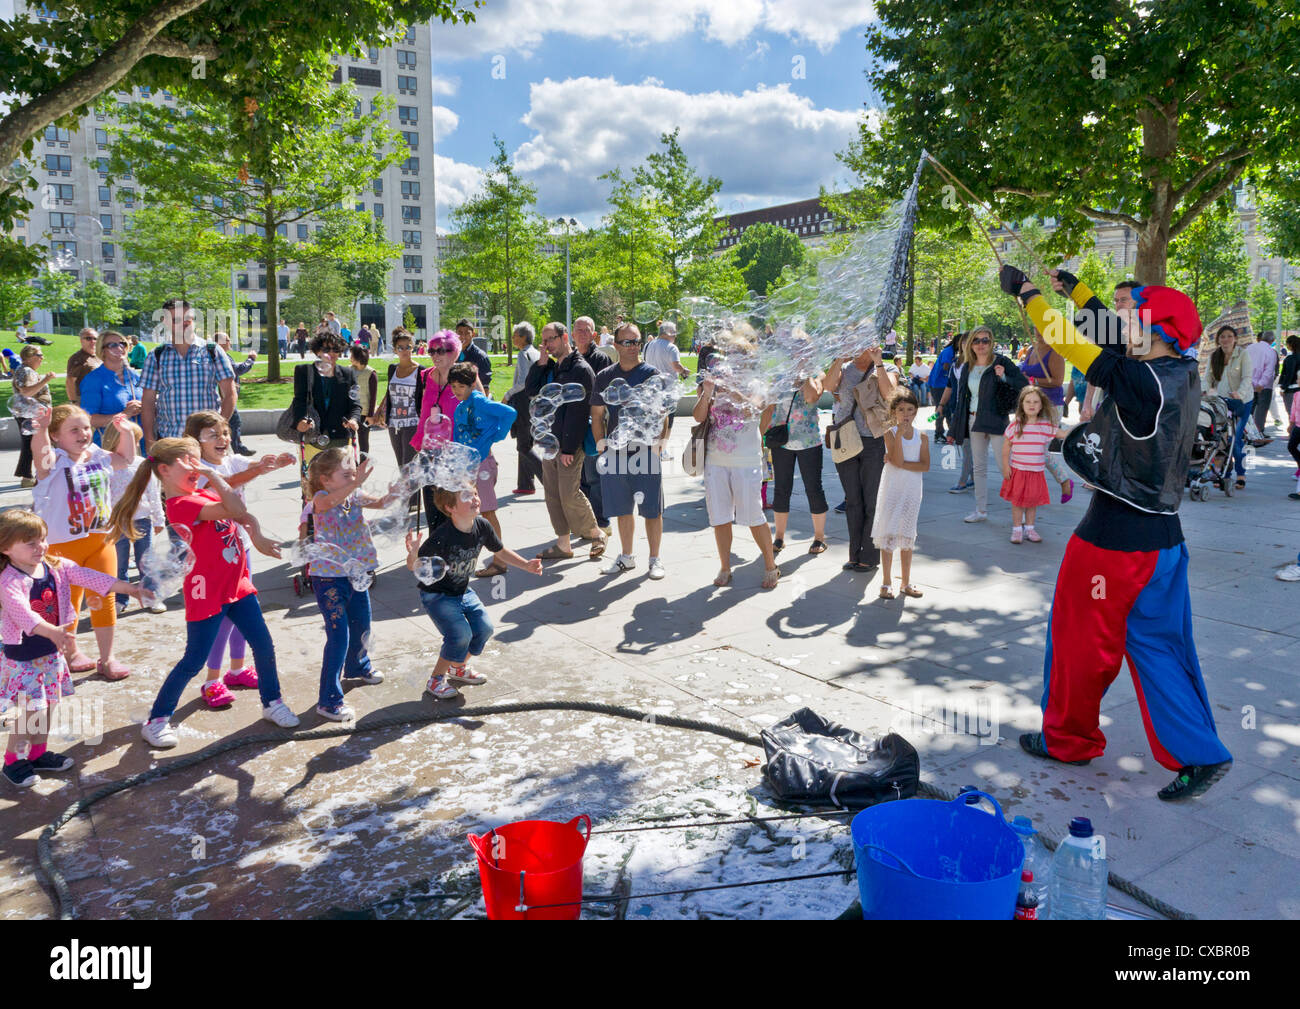 Les enfants et les parents de regarder un artiste de rue, faire des bulles géantes Jubilee Gardens Londres Angleterre Royaume-uni GB EU Europe Banque D'Images